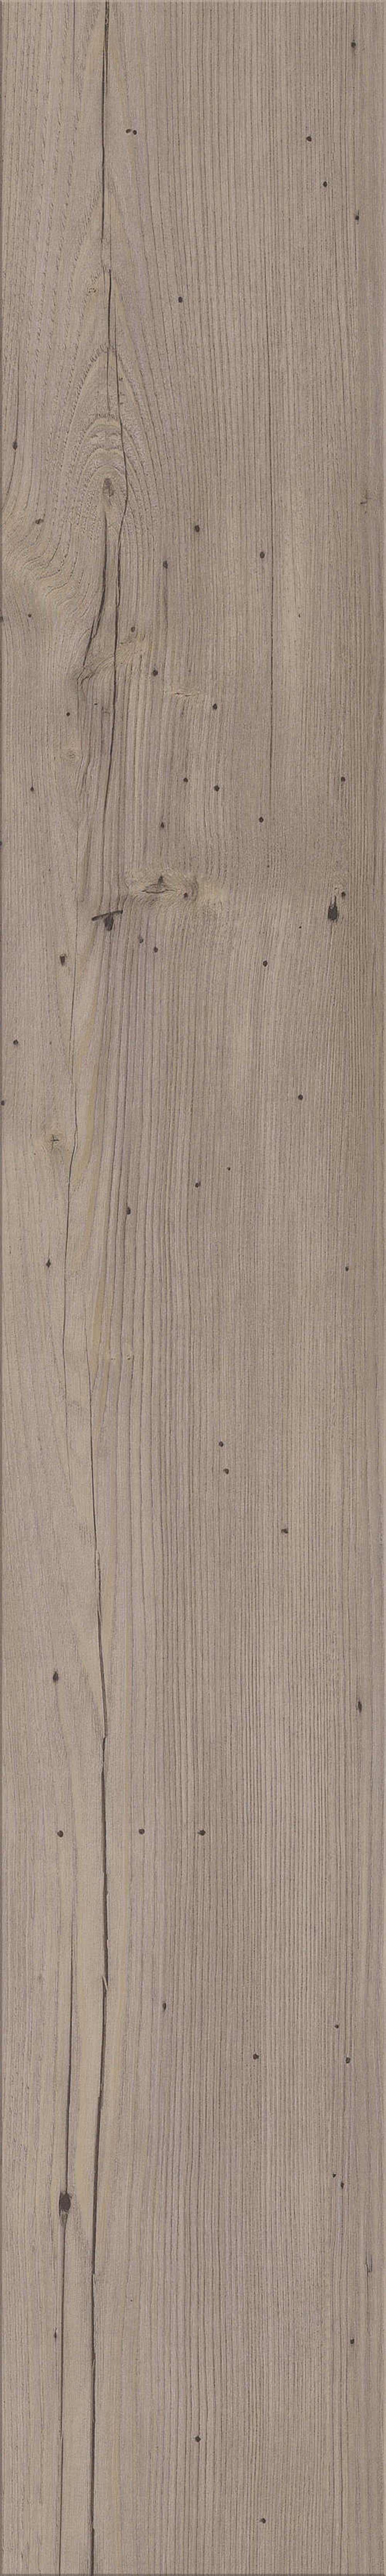 mFLOR Authentic Plank 81031 | PVC Plak Ferne | L 121,92 x B 18,42 cm